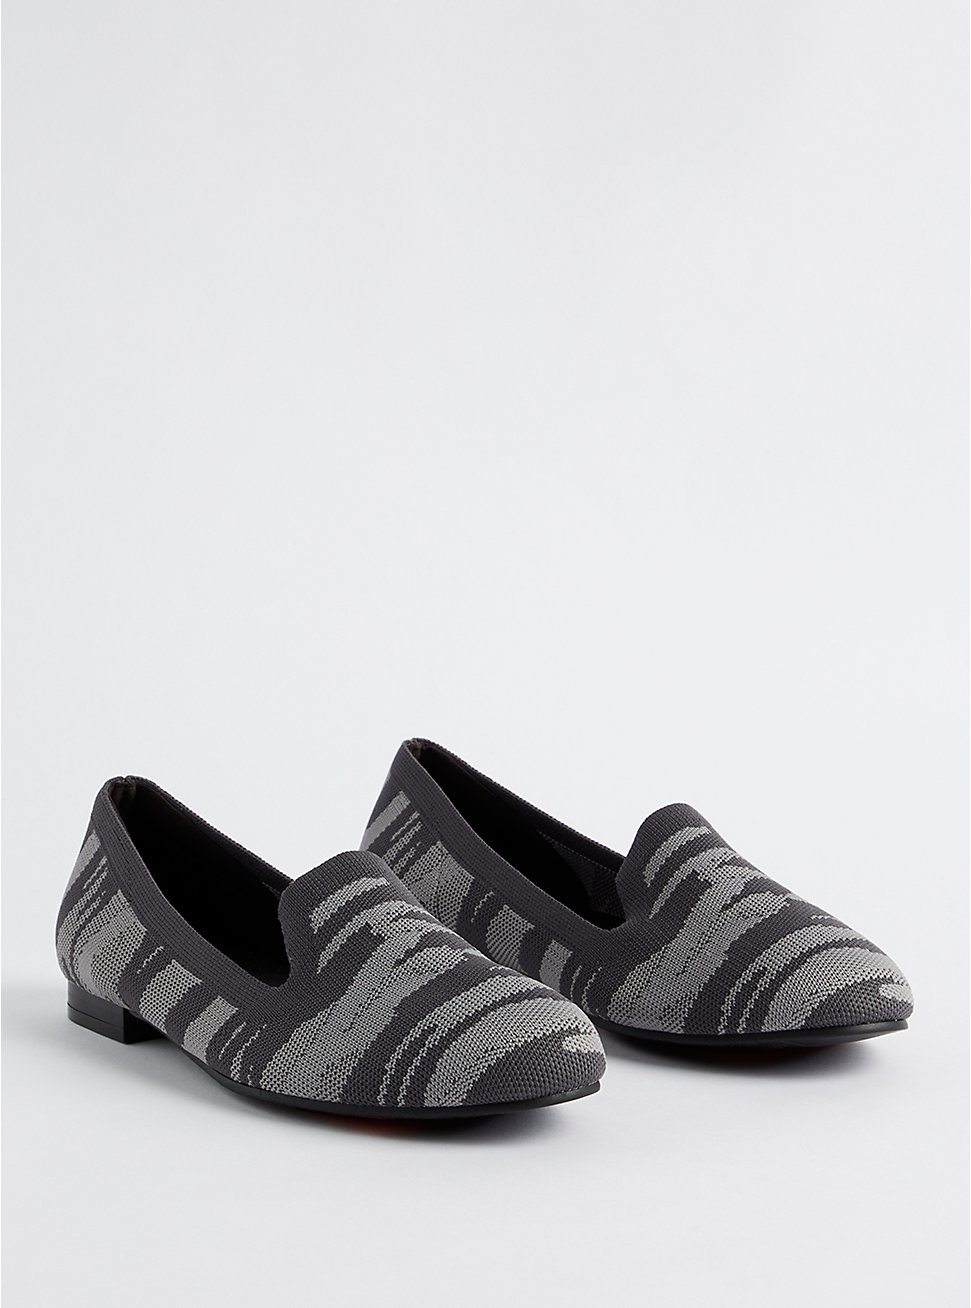 Plus Size Loafer - Stretch Knit Camo Grey (WW), GREY, hi-res